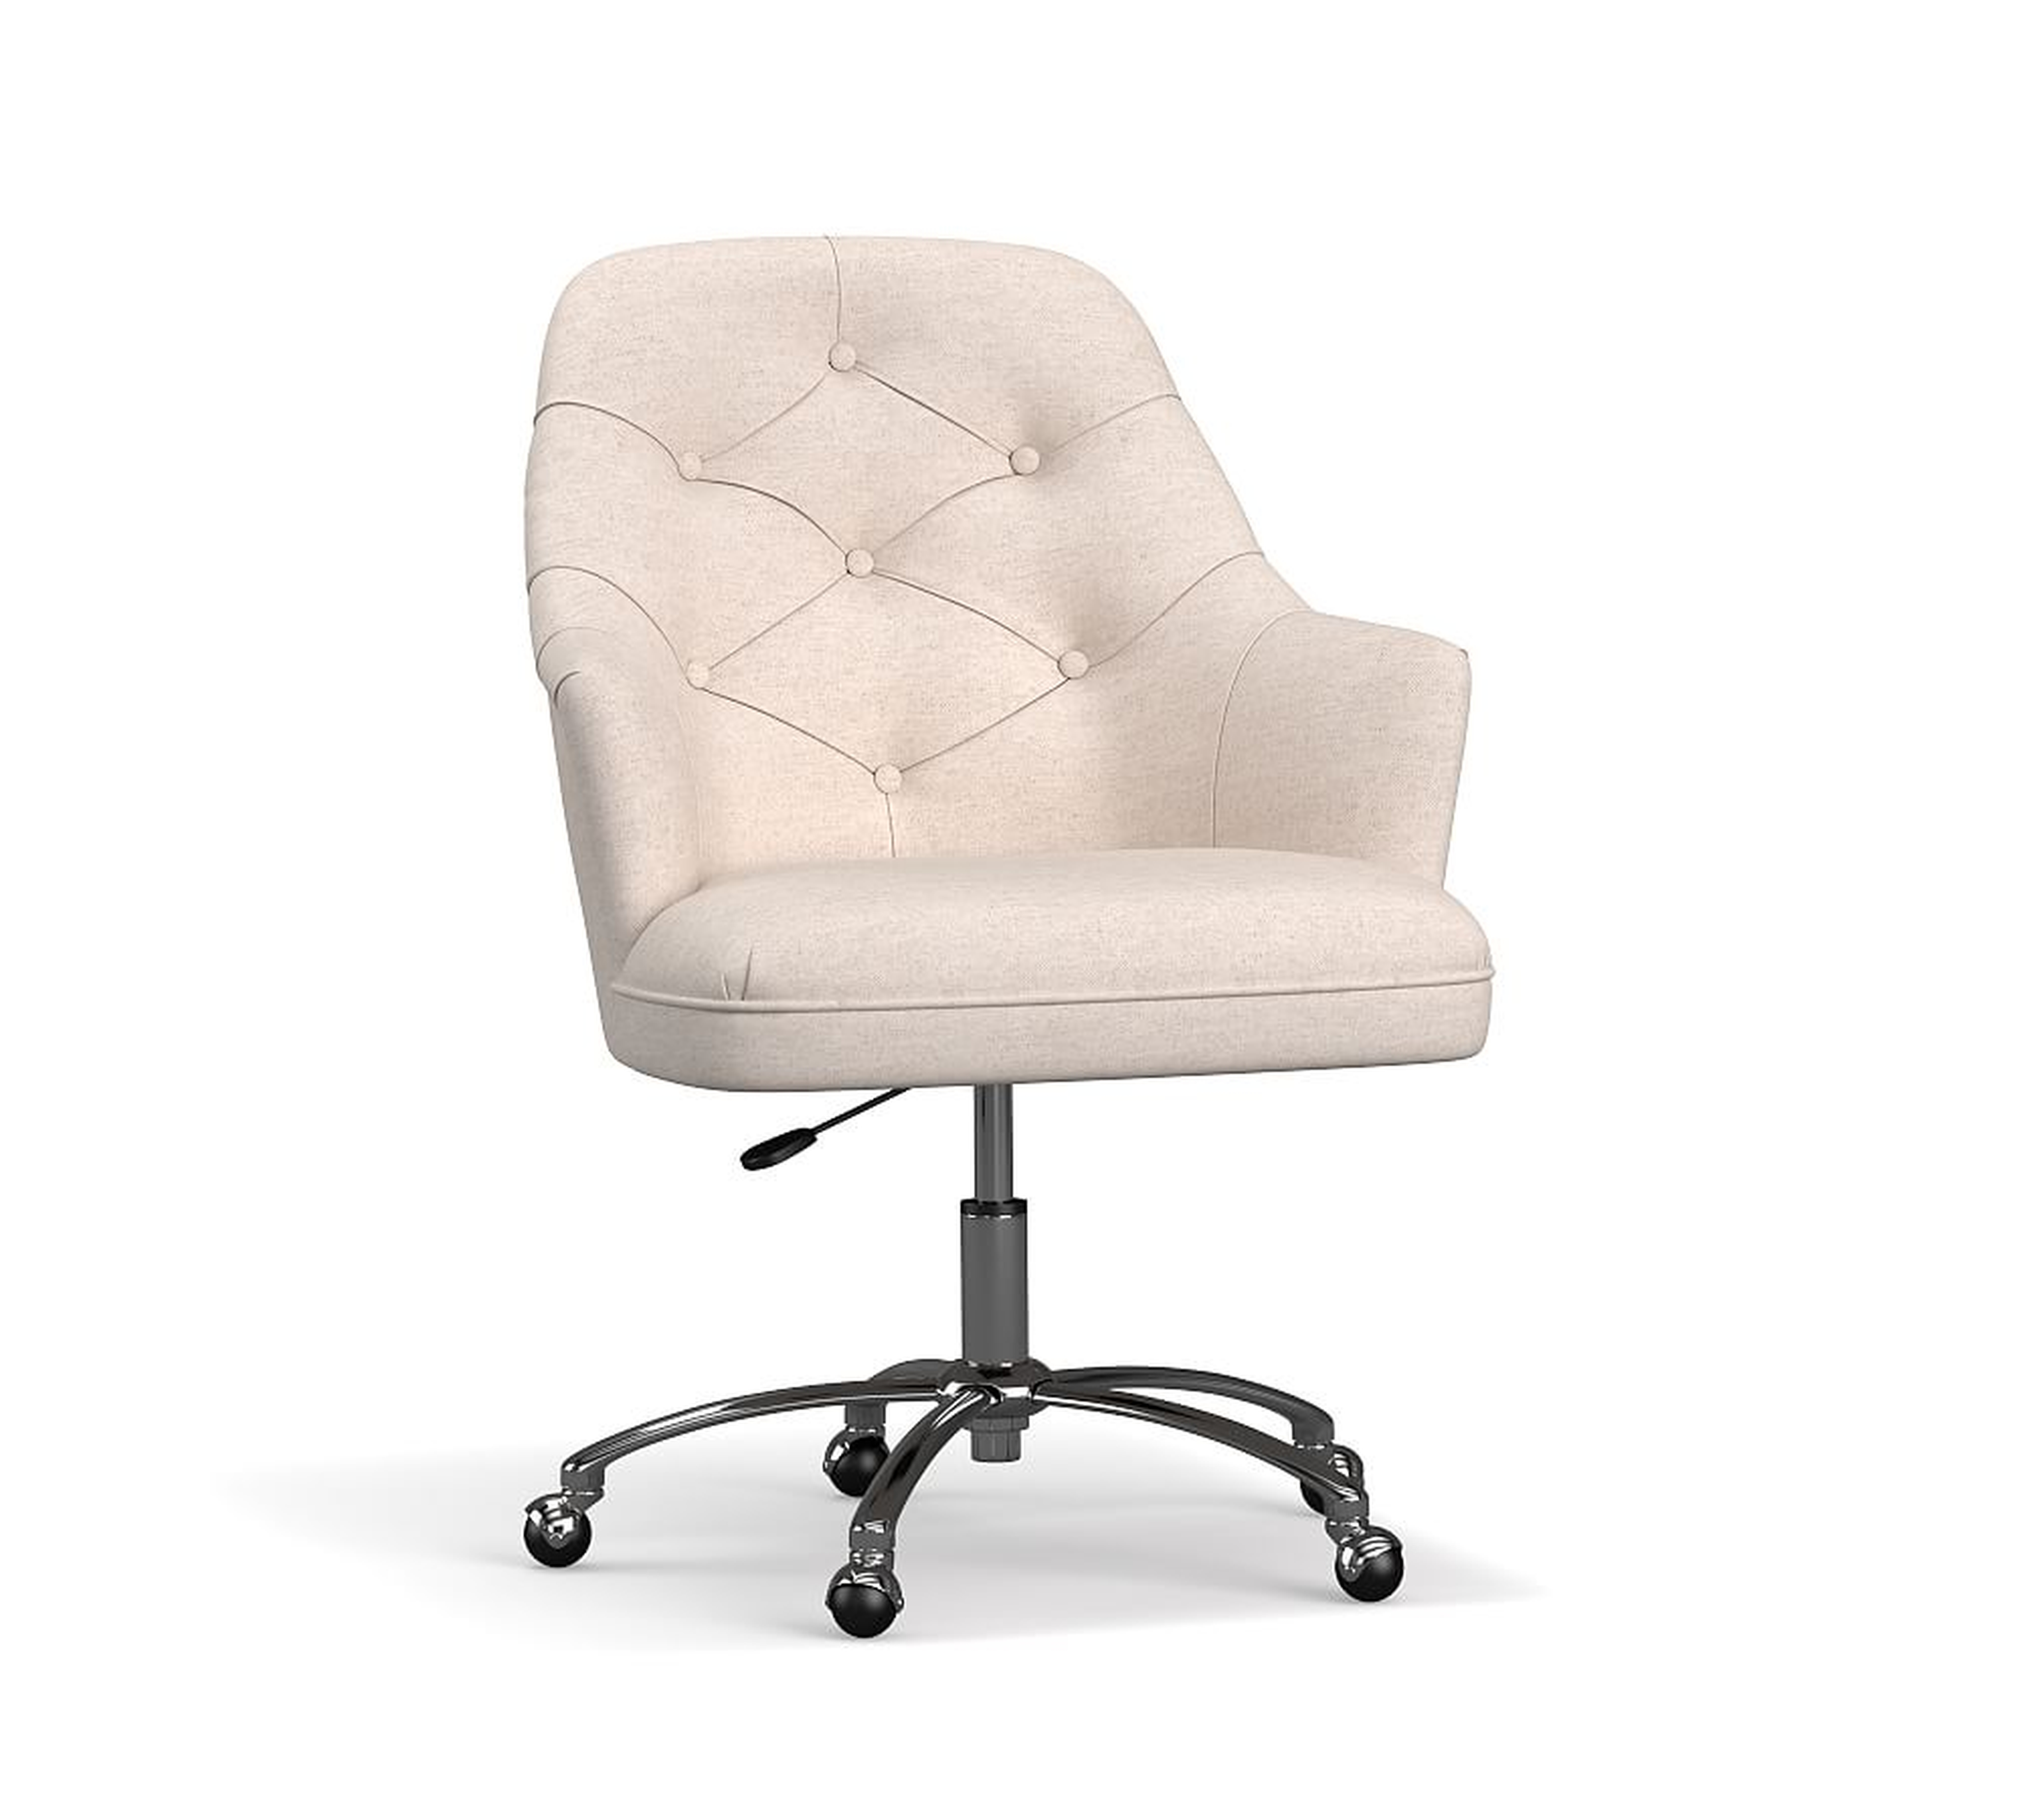 Everett Upholstered Swivel Desk Chair, Polished Nickel Base, Chenille Basketweave Oatmeal - Pottery Barn